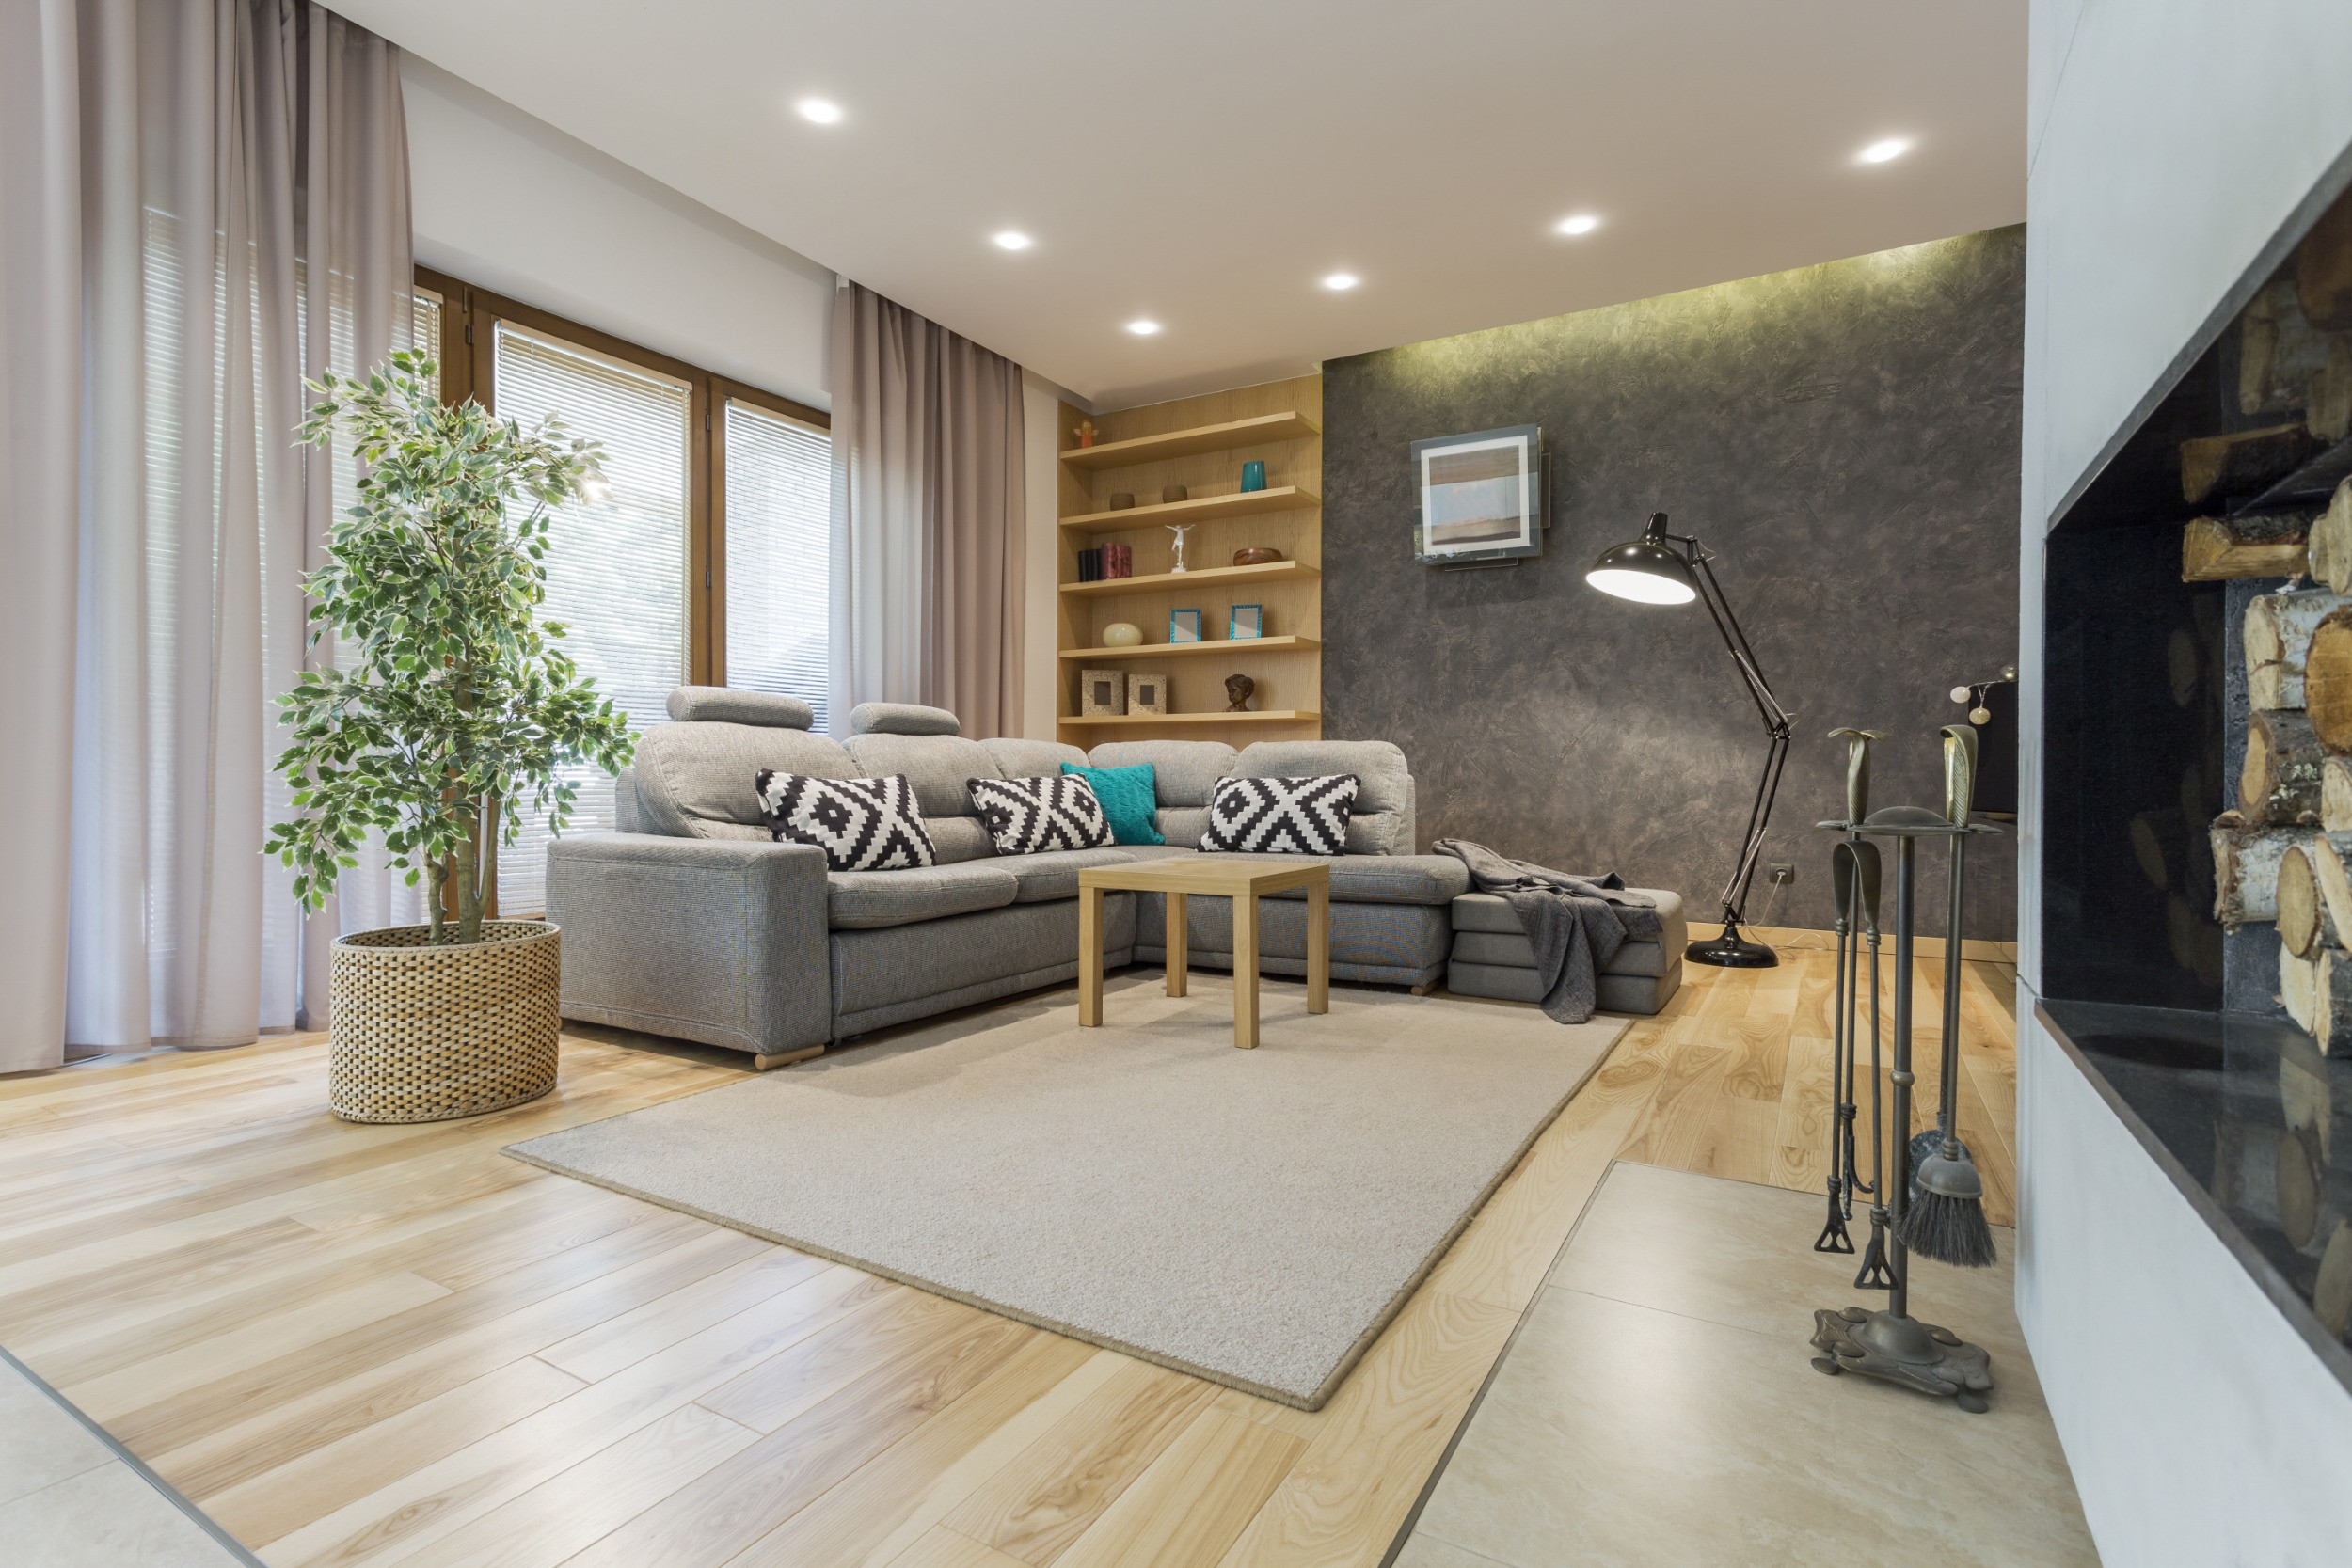 Indirekte Beleuchtung Für Die Decke | Obi regarding Wohnzimmer Indirekte Beleuchtung Decke